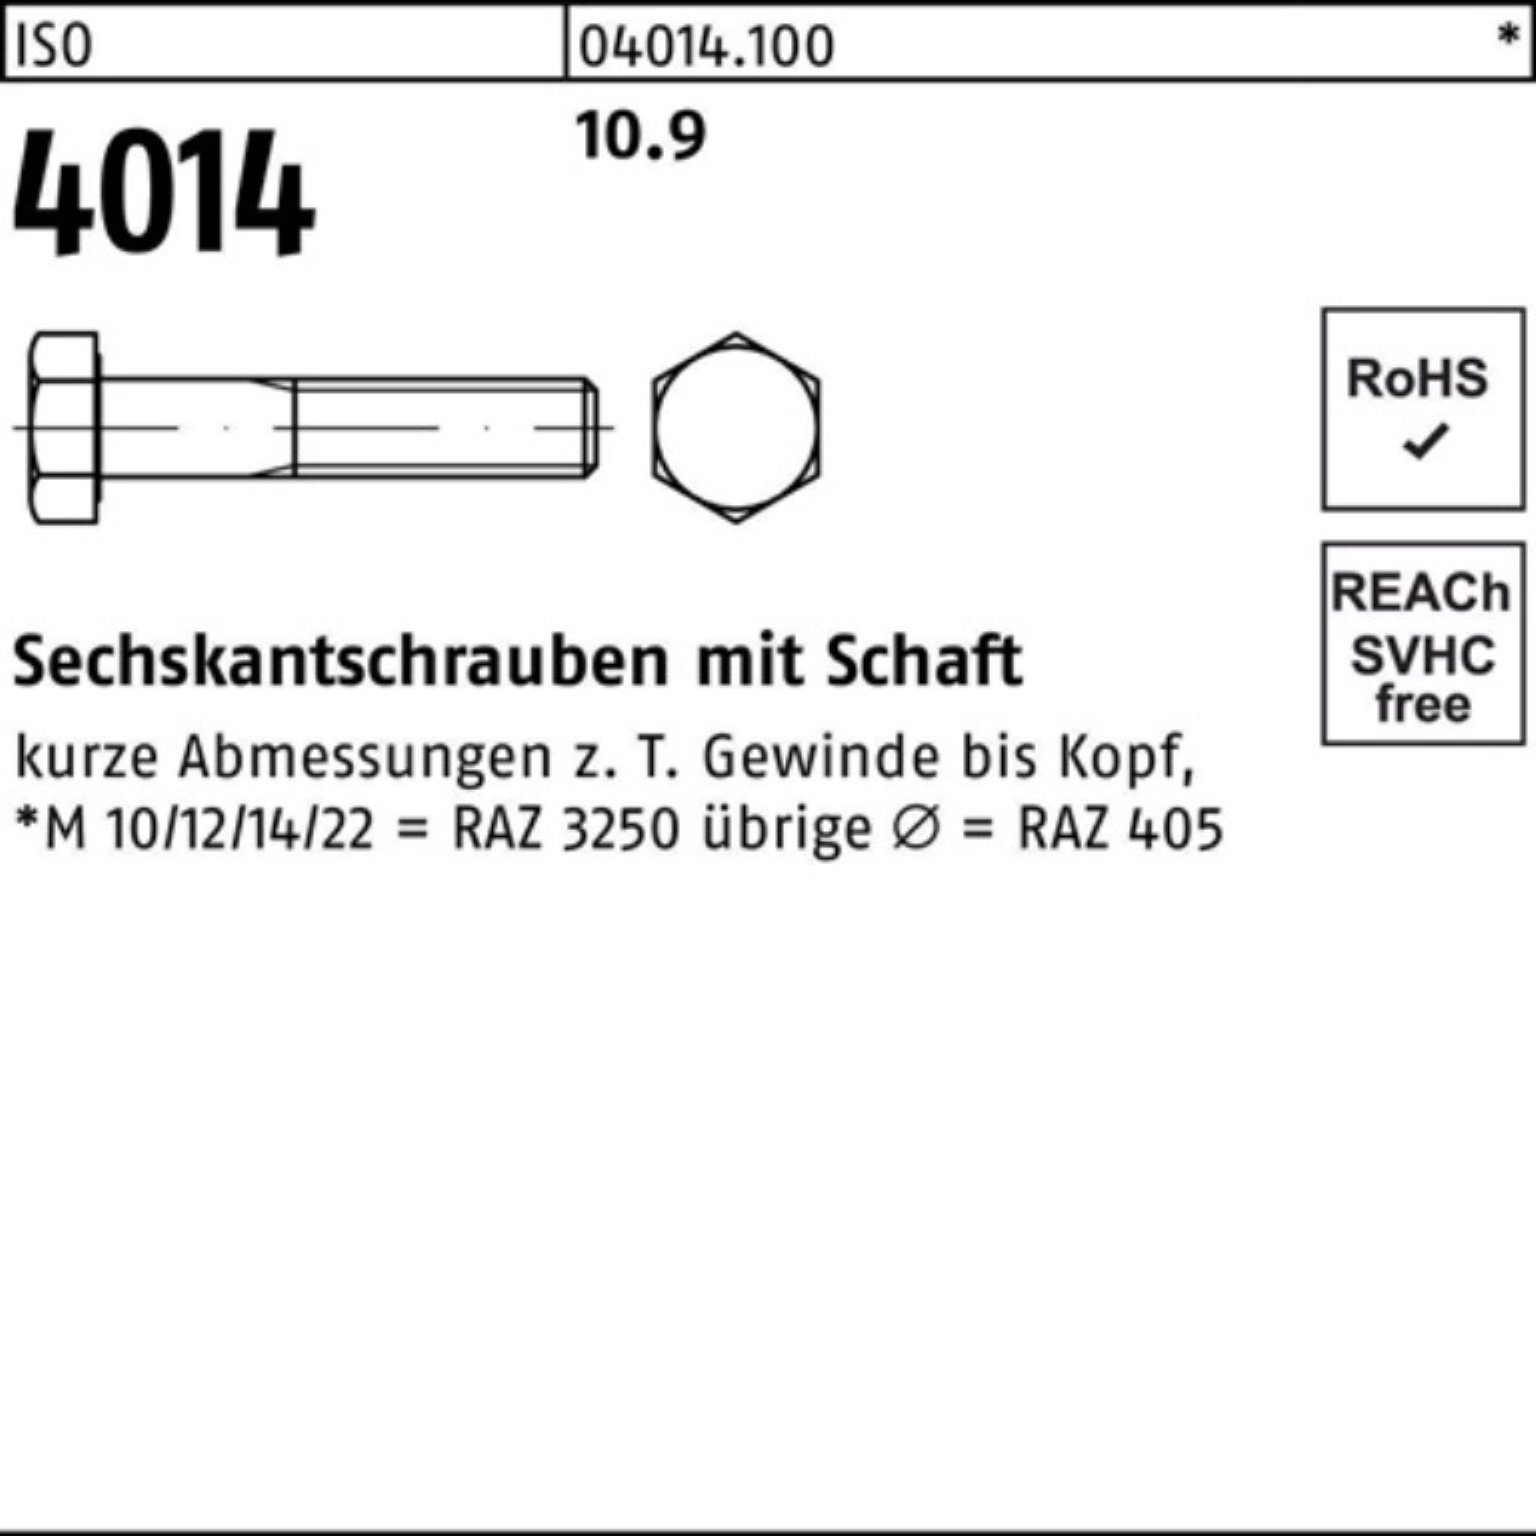 ISO Pack Sechskantschraube M30x 10.9 110 IS Schaft 100er Sechskantschraube Stück Bufab 4014 1